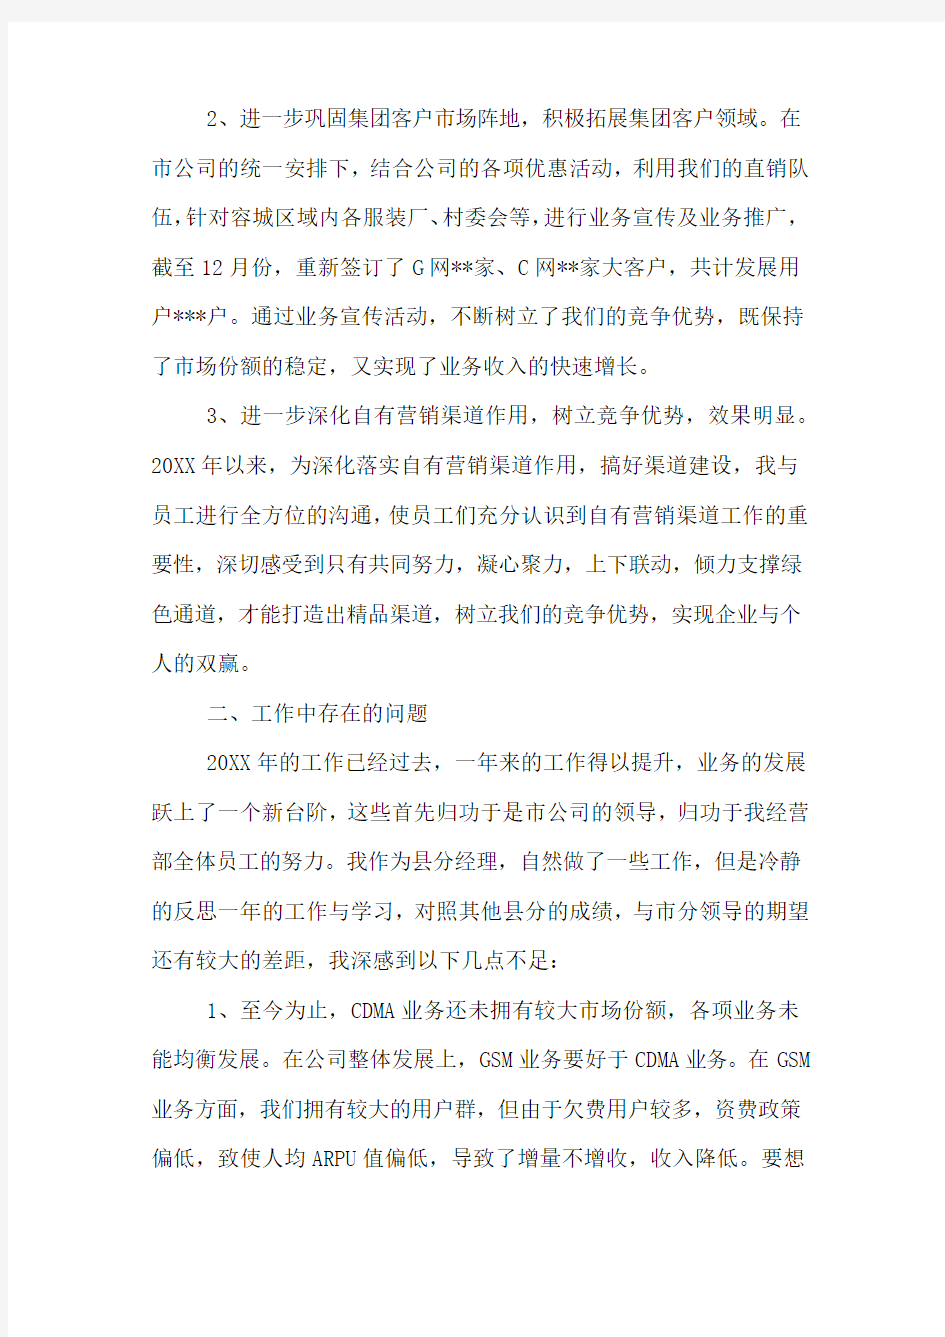 中国联通分公司员工述职报告